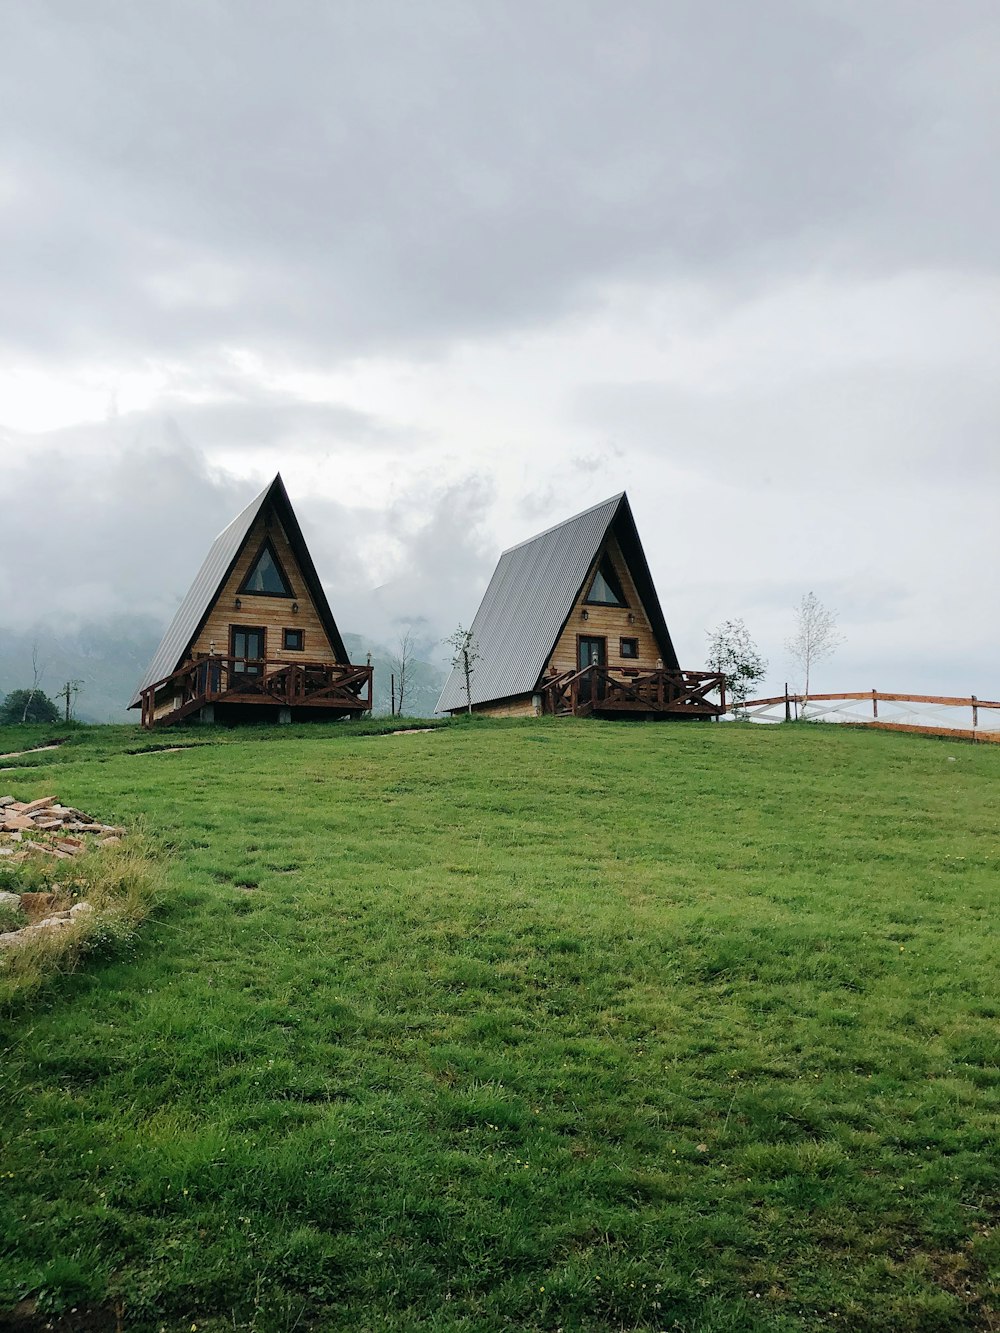 casa de madera marrón en campo de hierba verde bajo cielo nublado blanco durante el día